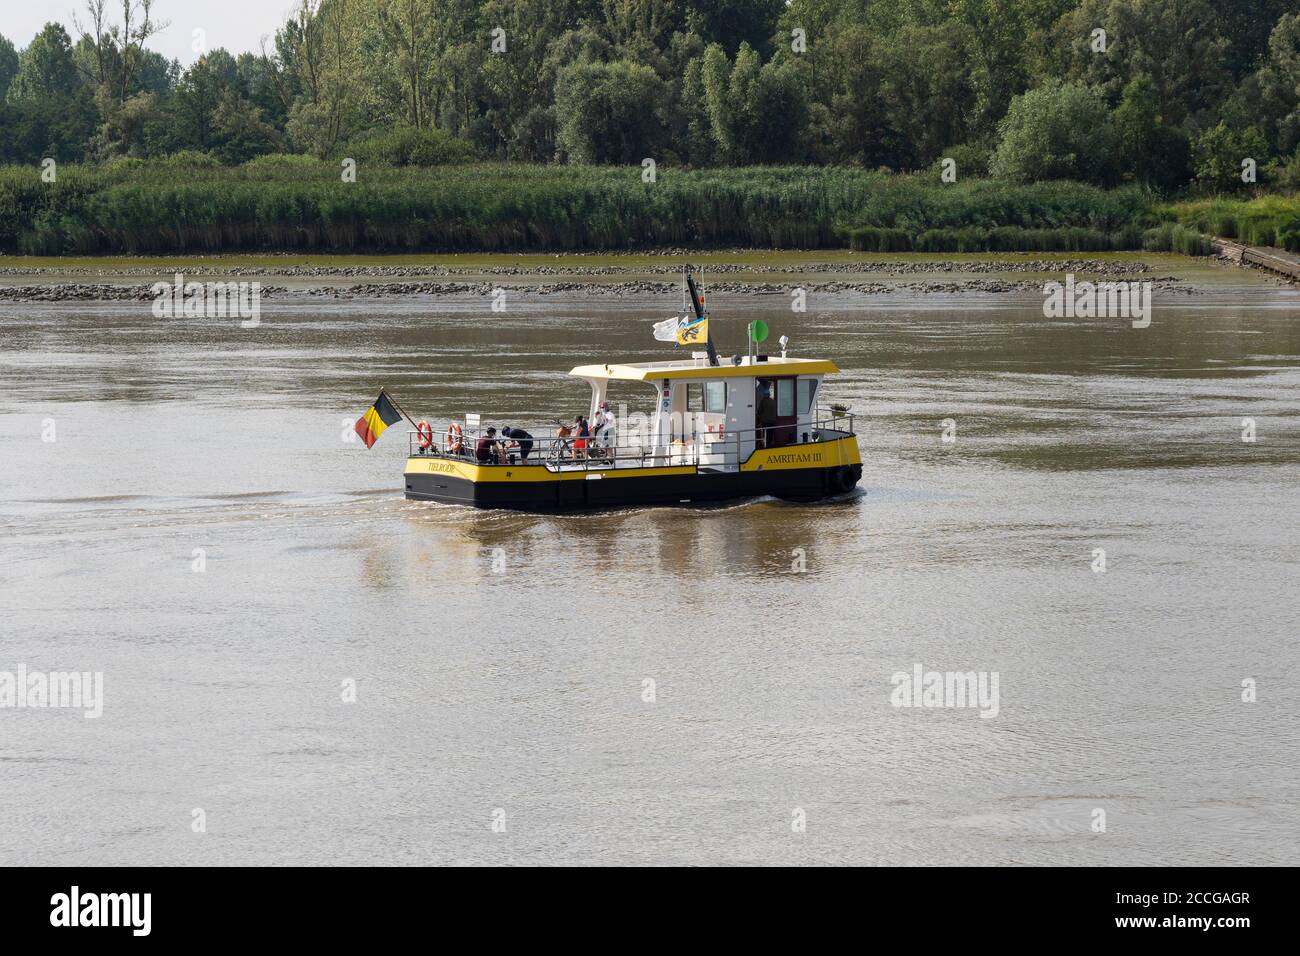 Tielrode, Belgique, le 02 août 2020, le ferry avec des personnes à bord de la rivière Durme Banque D'Images